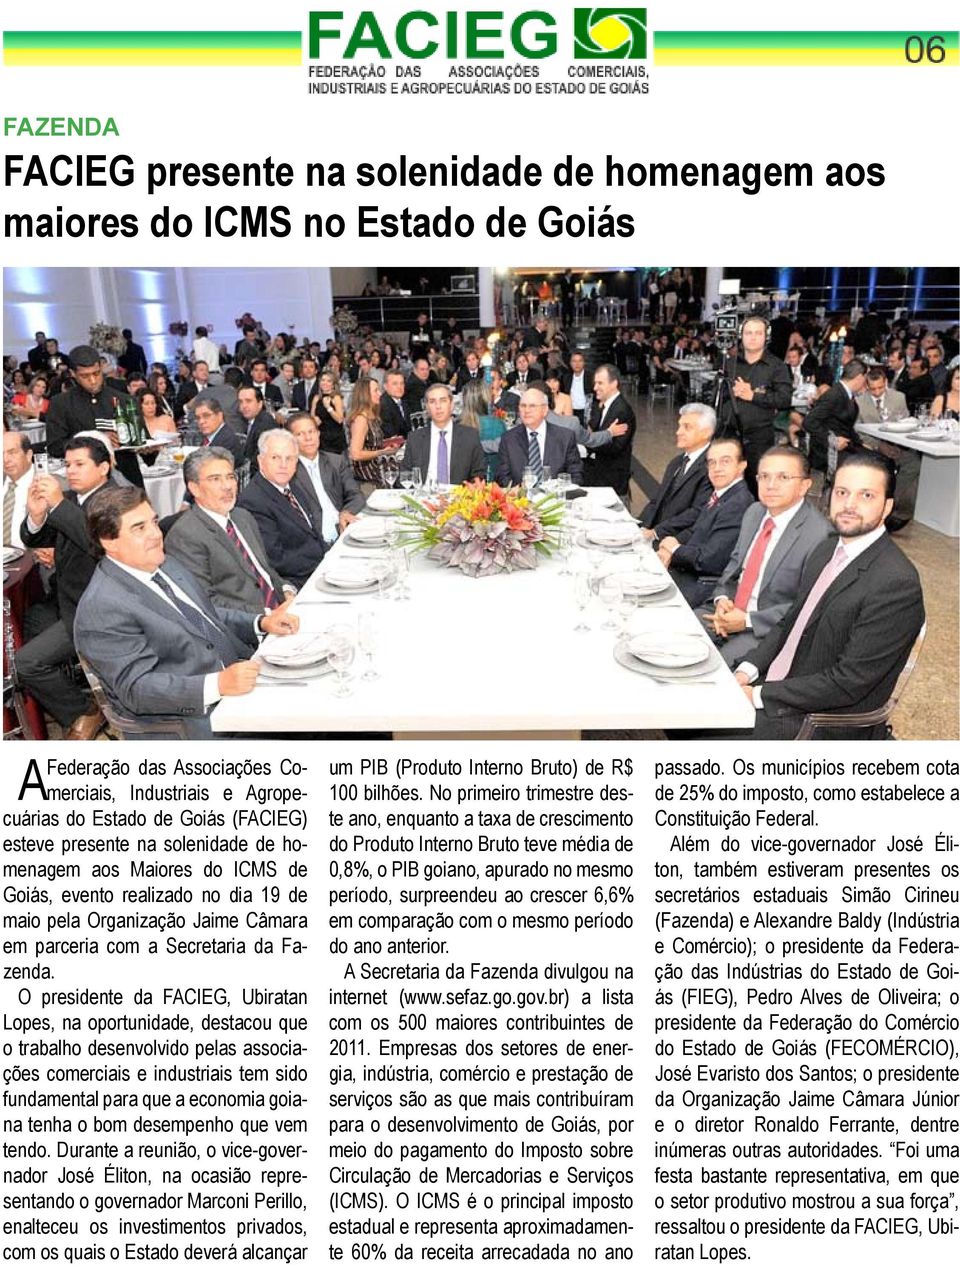 O presidente da FACIEG, Ubiratan Lopes, na oportunidade, destacou que o trabalho desenvolvido pelas associações comerciais e industriais tem sido fundamental para que a economia goiana tenha o bom